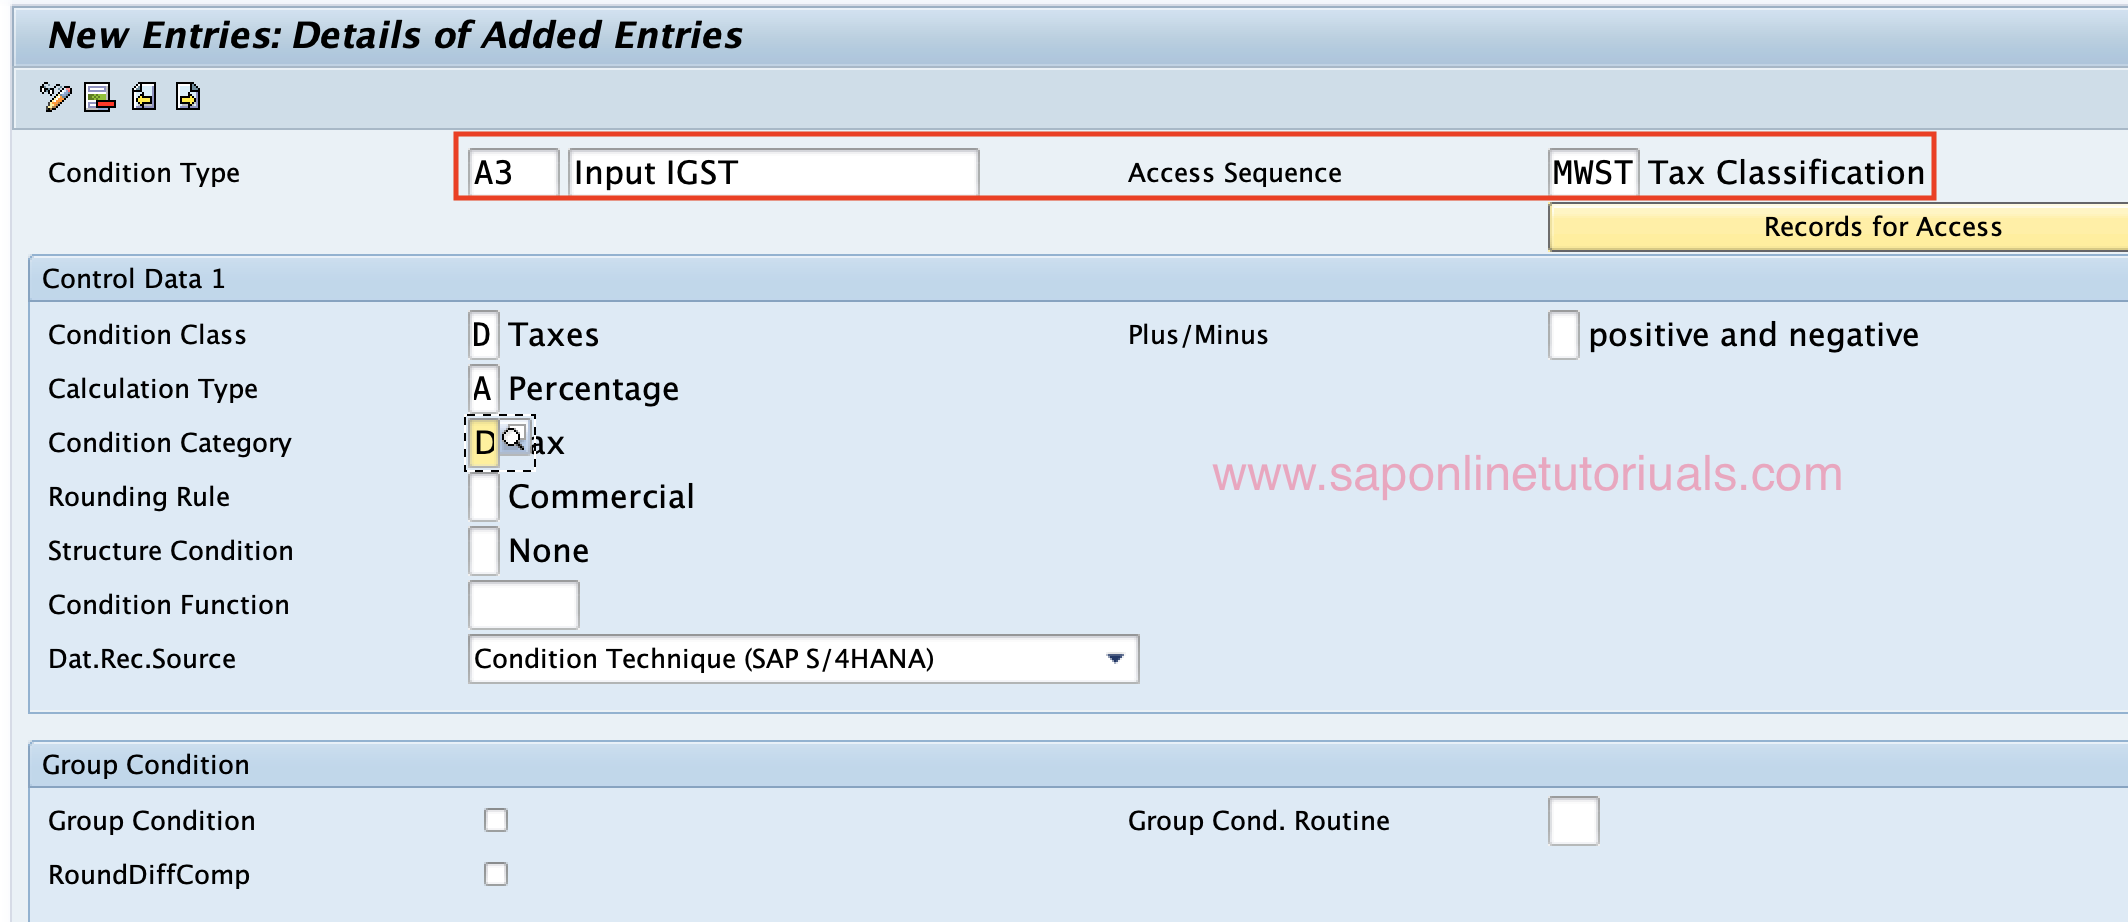 A3 - Input IGST SAP